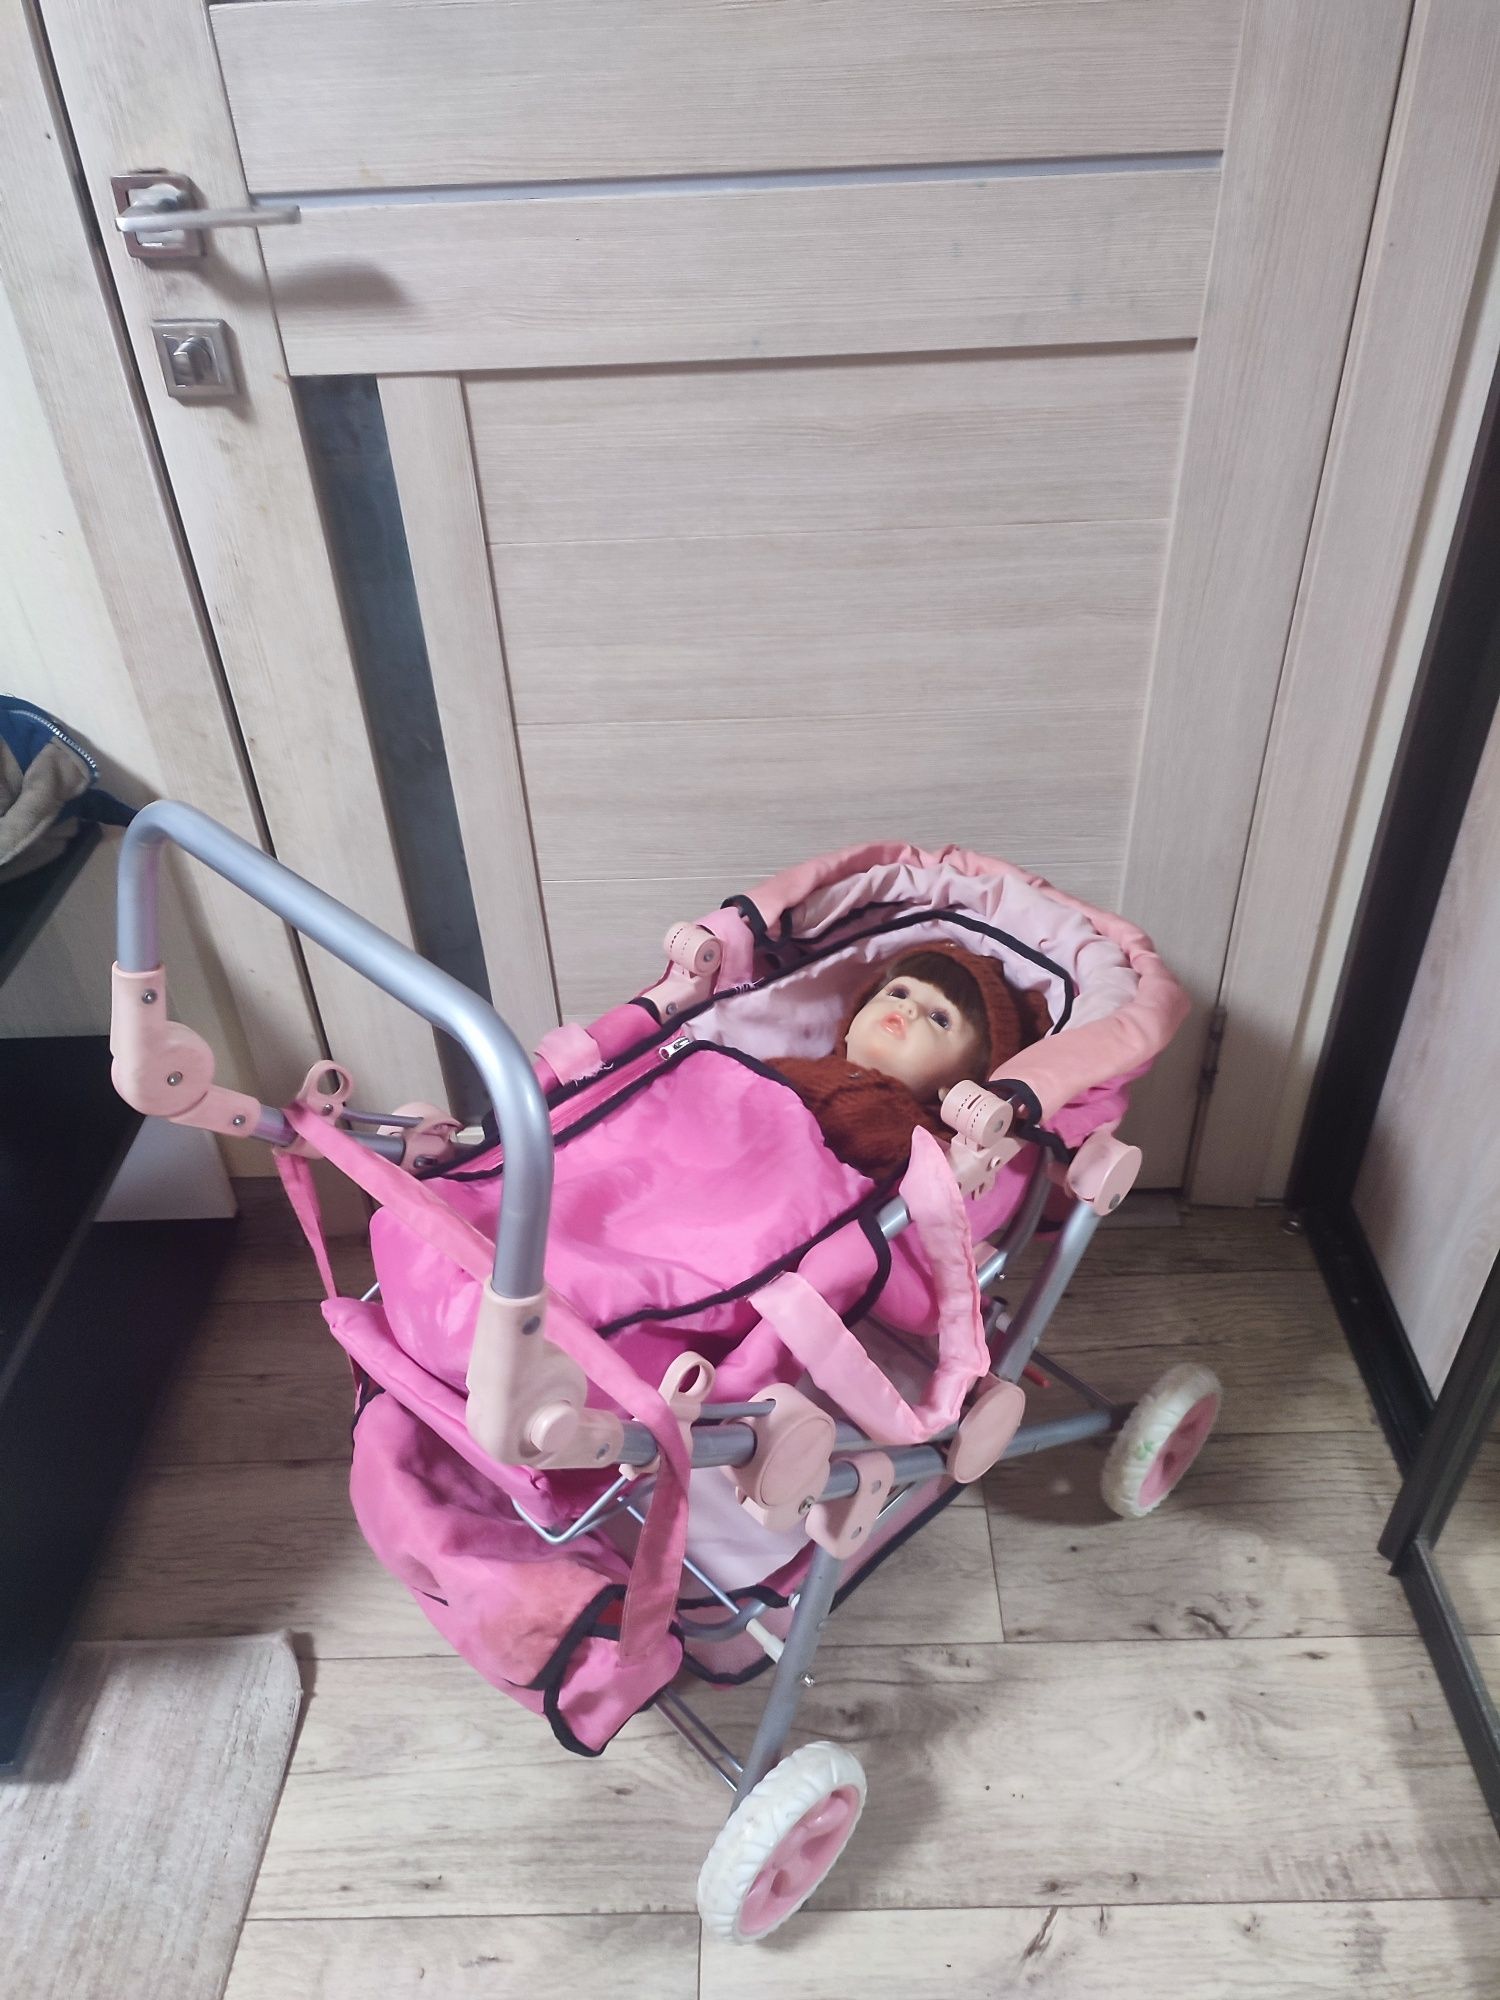 Детская коляска для кукол